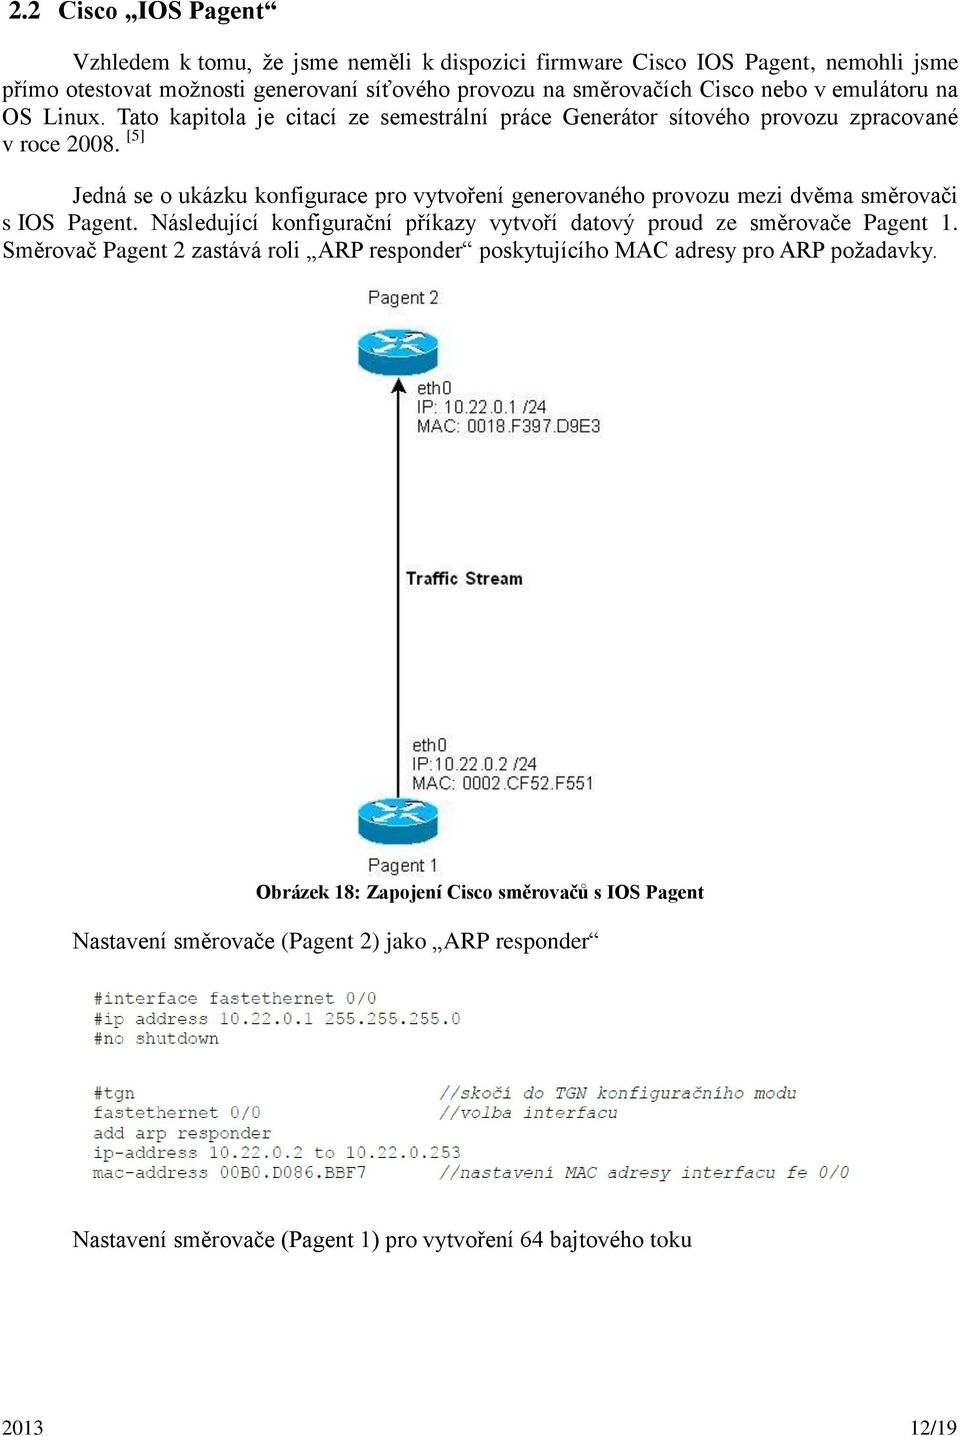 [5] Jedná se o ukázku konfigurace pro vytvoření generovaného provozu mezi dvěma směrovači s IOS Pagent. Následující konfigurační příkazy vytvoří datový proud ze směrovače Pagent 1.